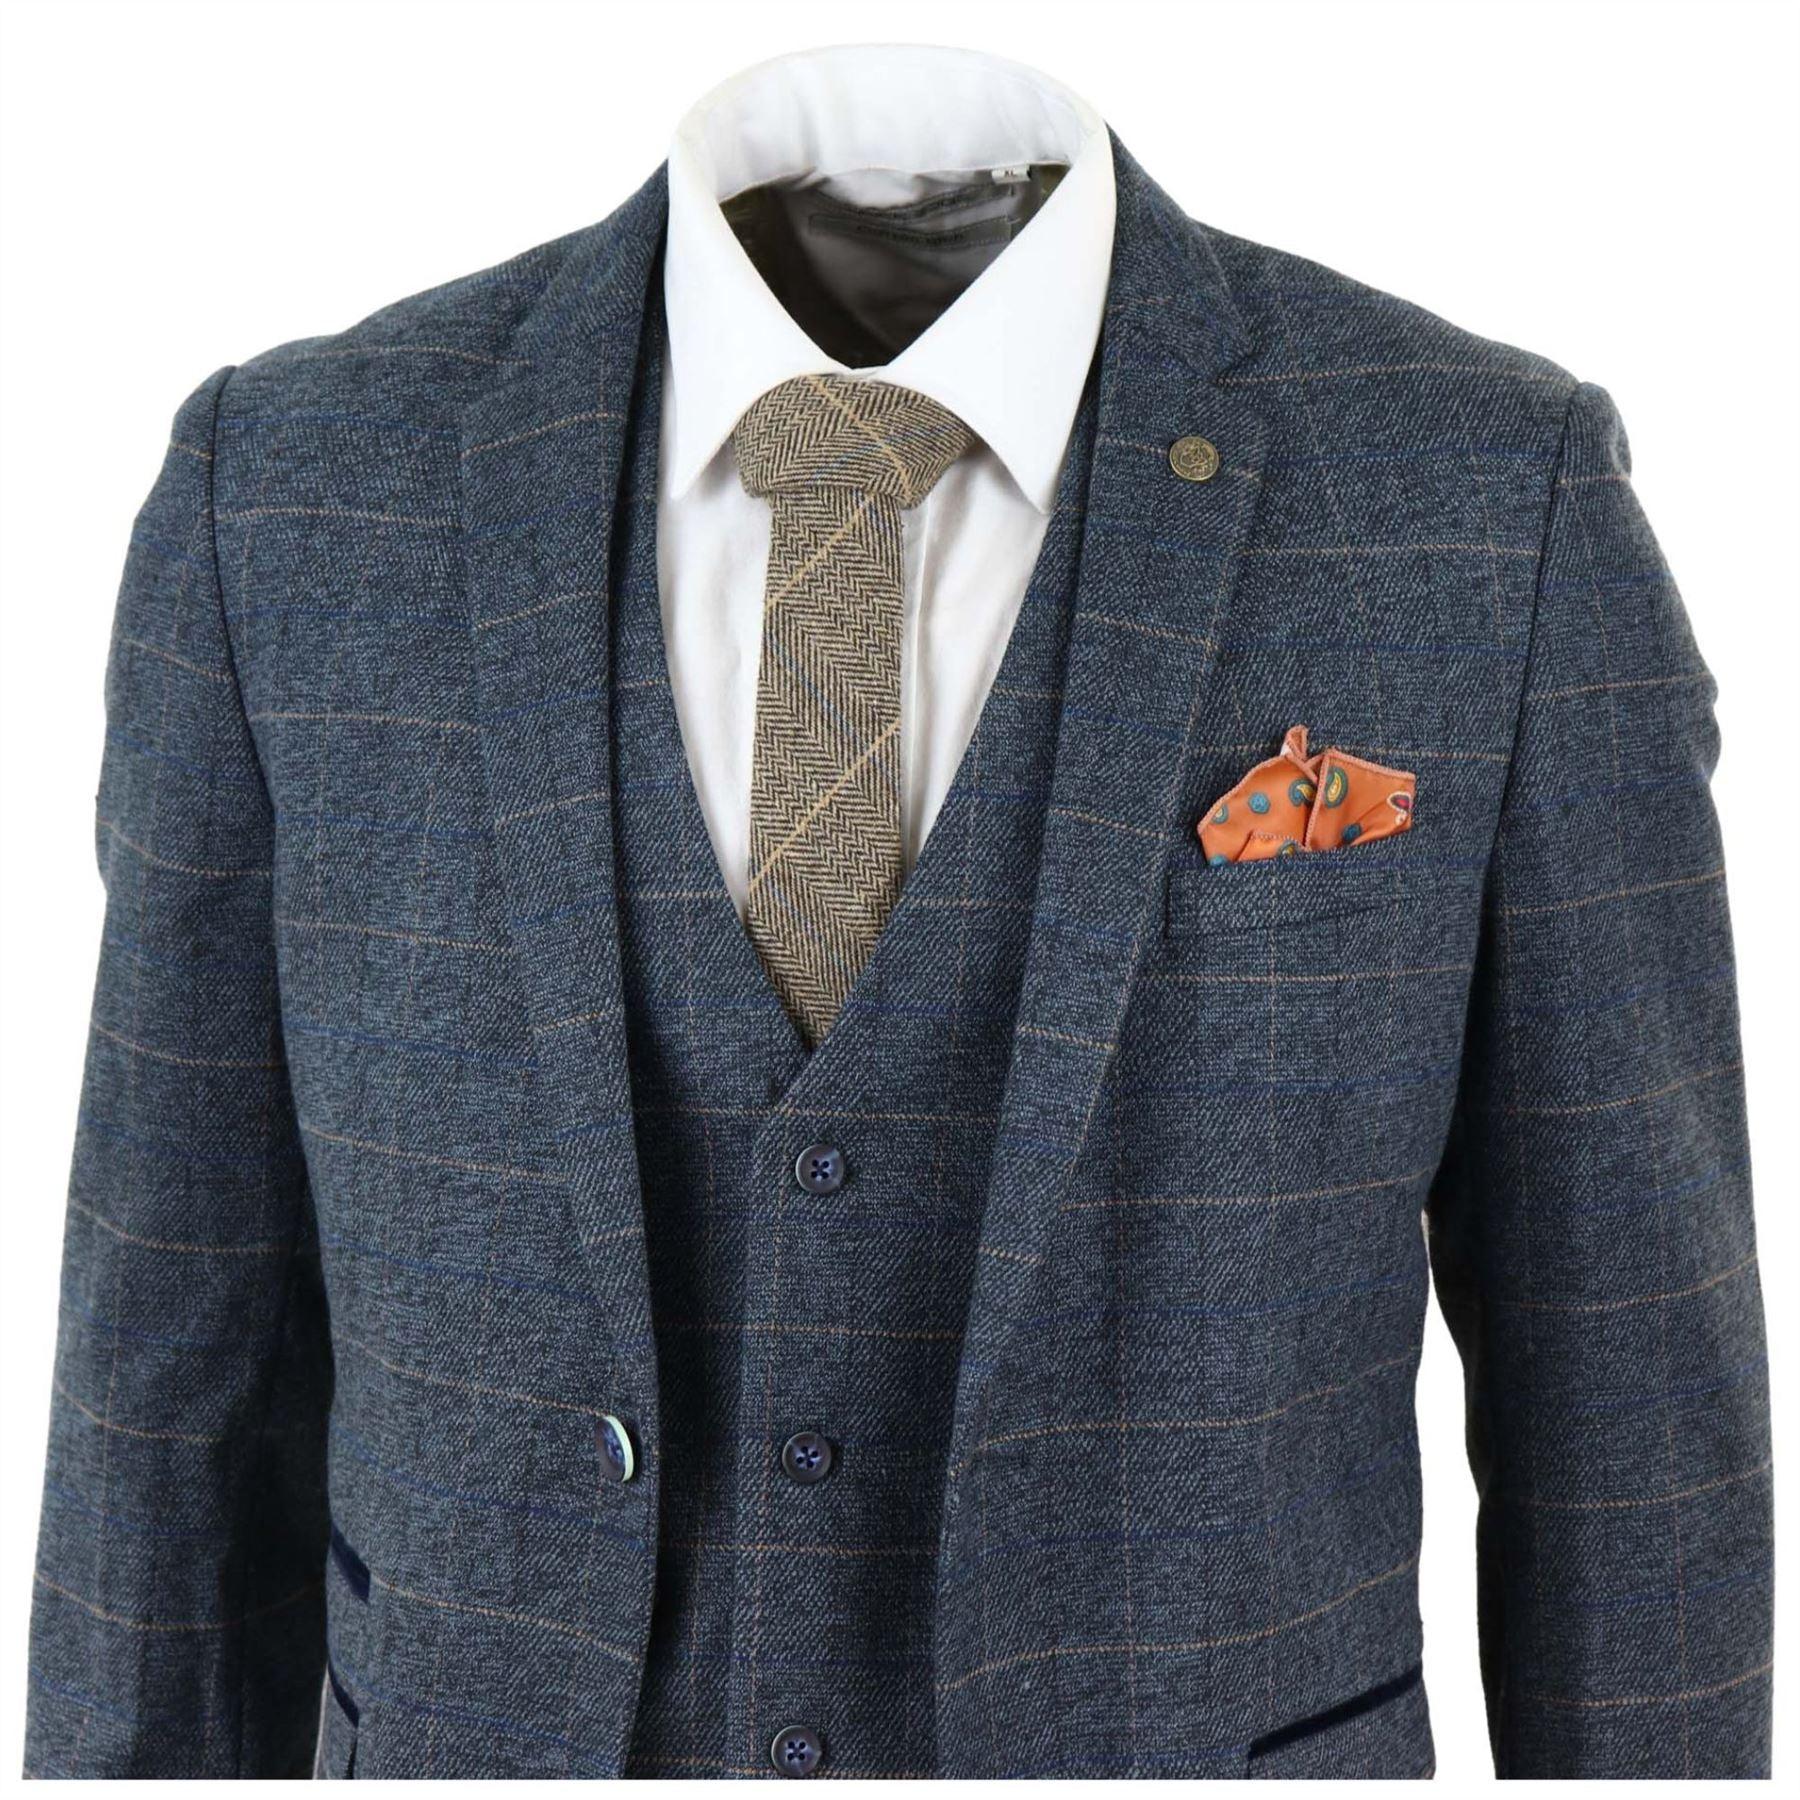 Mens Blue Check 3 Piece Suit Herringbone Tweed Vintage Tailored Fit Grey Velvet - Knighthood Store